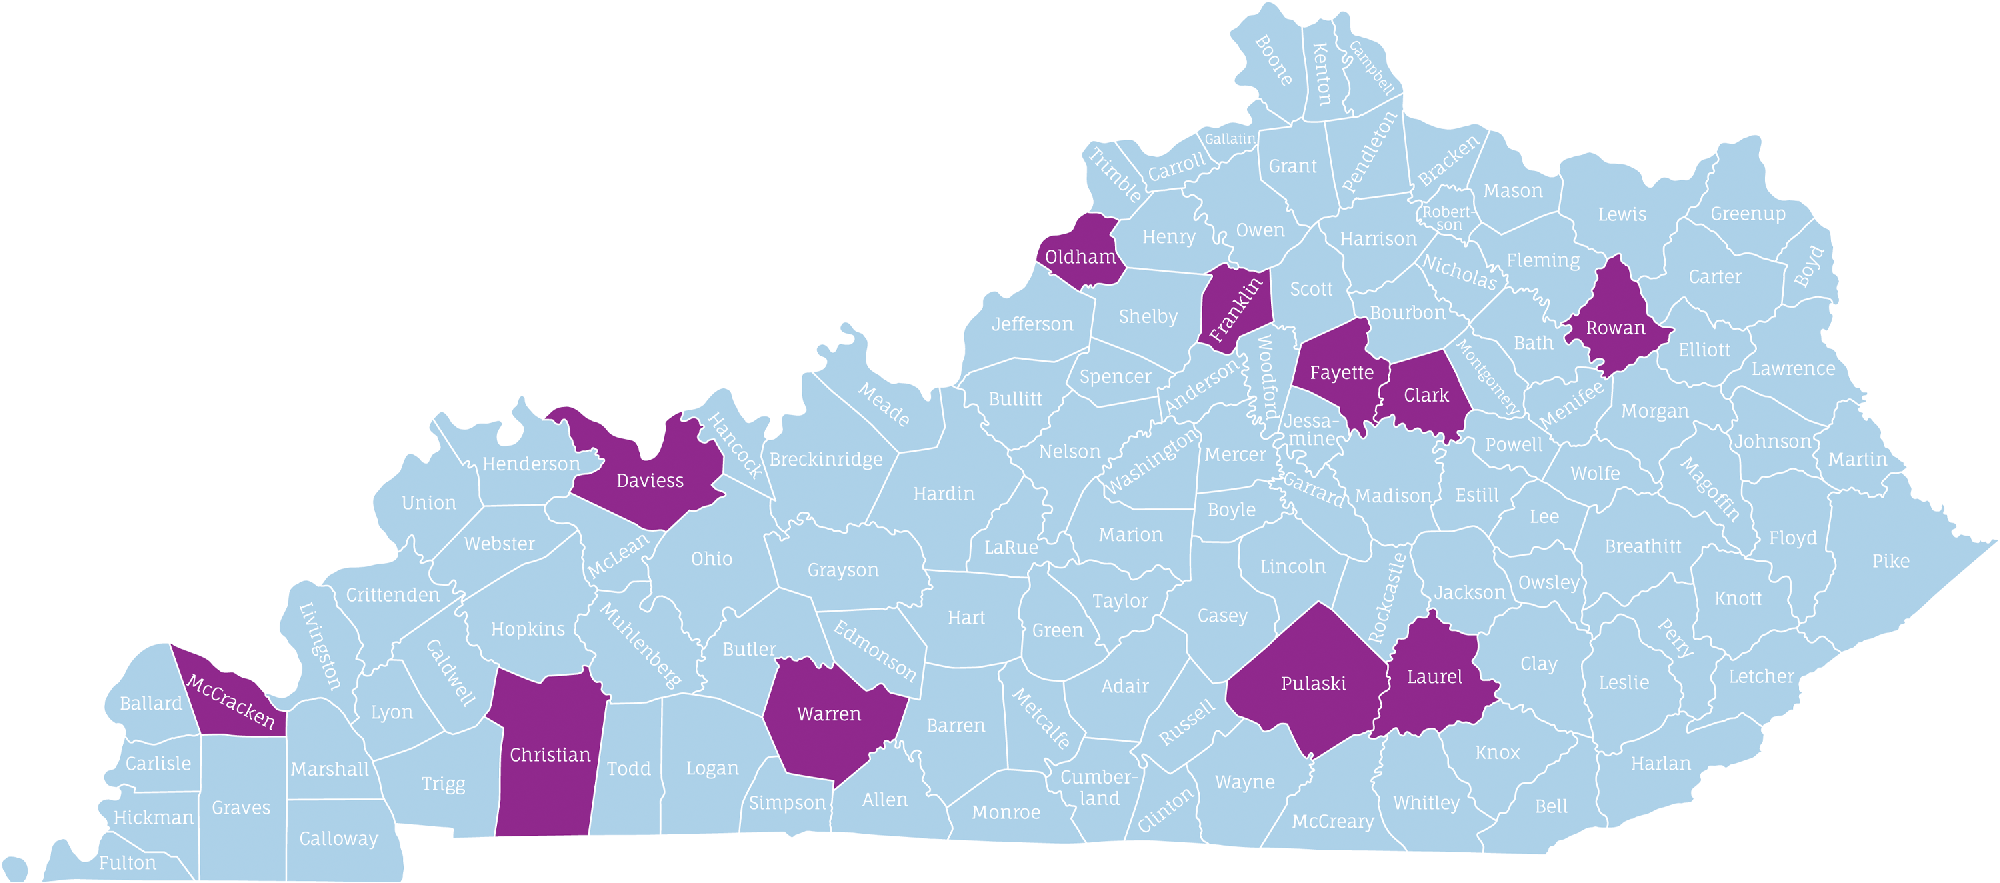 Kentucky Tour Stop Map